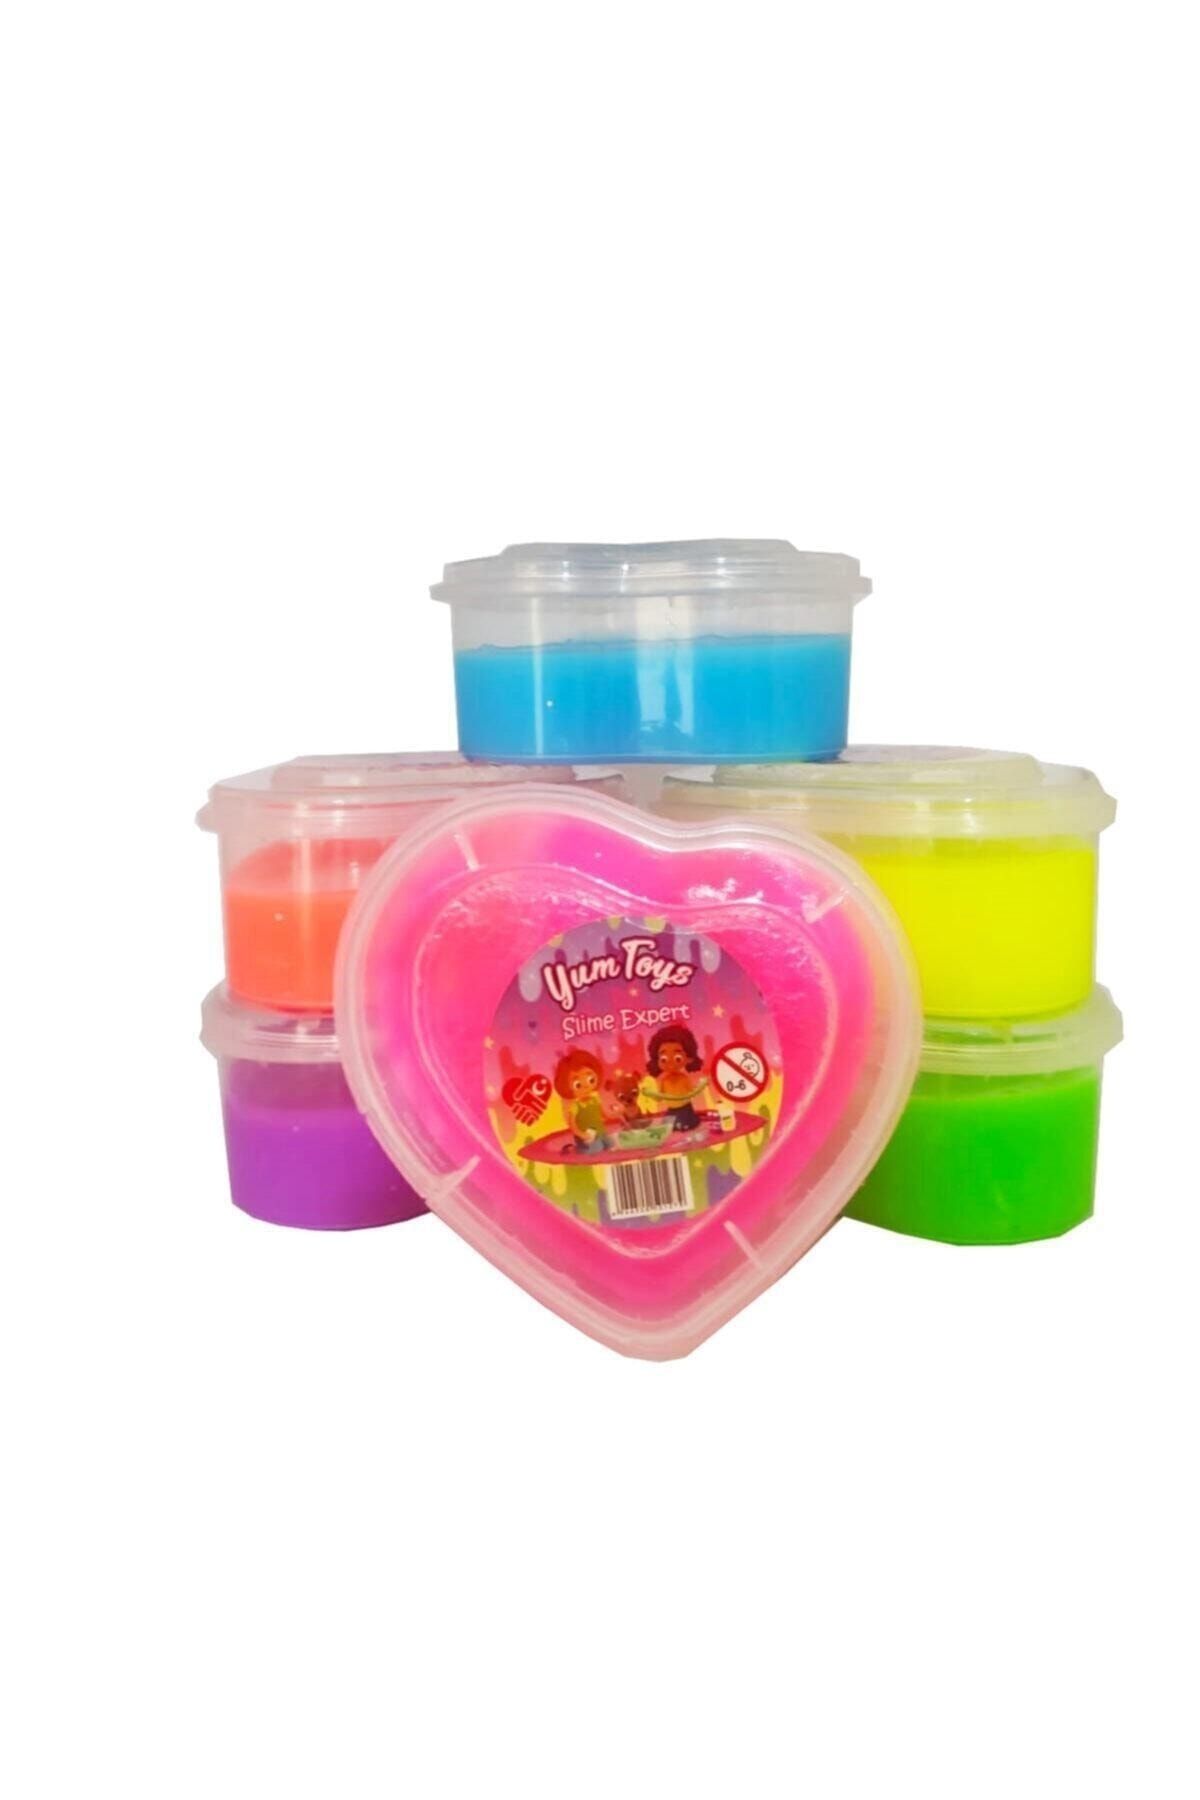 YUM TOYS Slime Oyun Jeli Kalp Kutu Yumtoys Polymer Slime Eğitici Oyun Seti 6'lı Set 170 gr